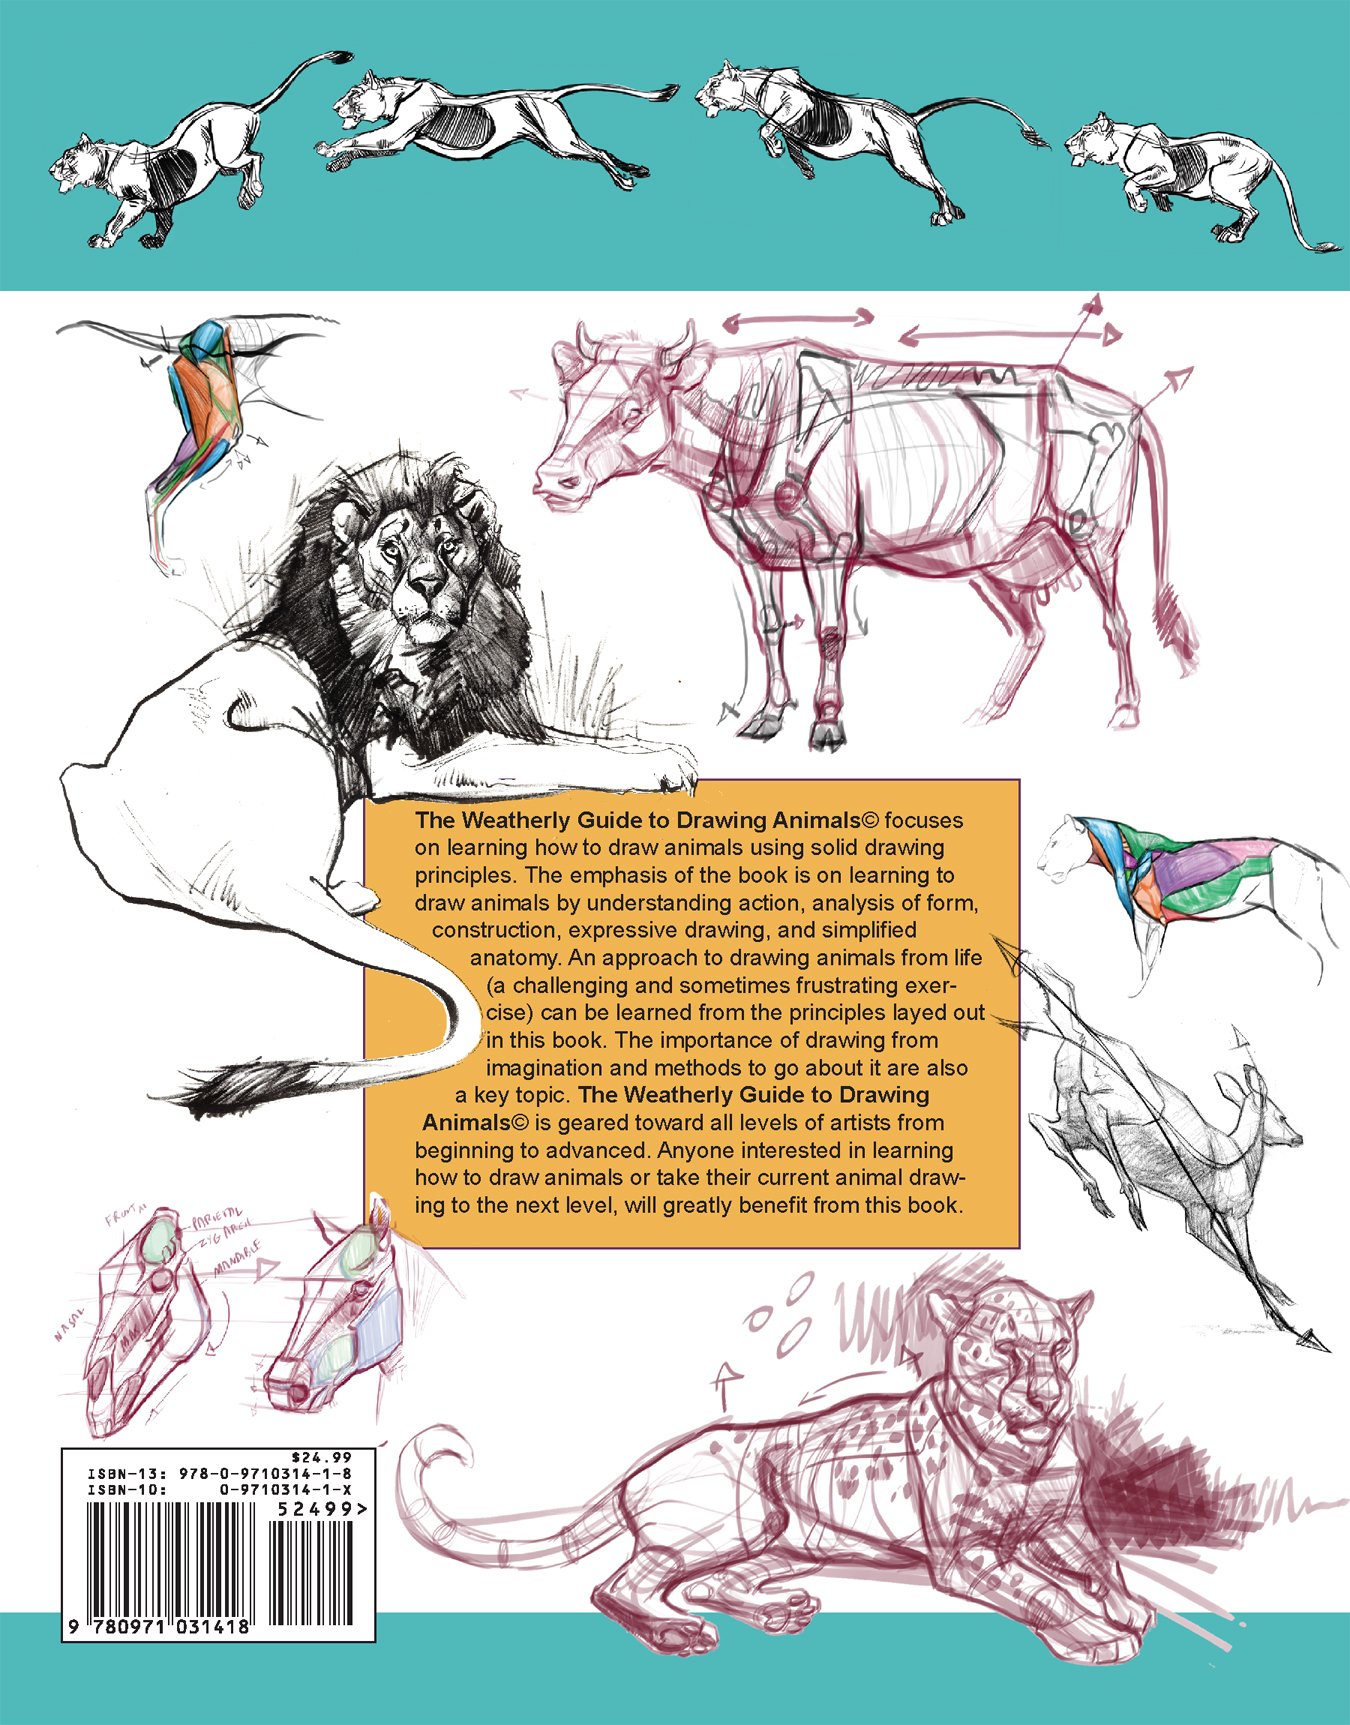 Mua The Weatherly Guide to Drawing Animals trên Amazon Mỹ chính hãng